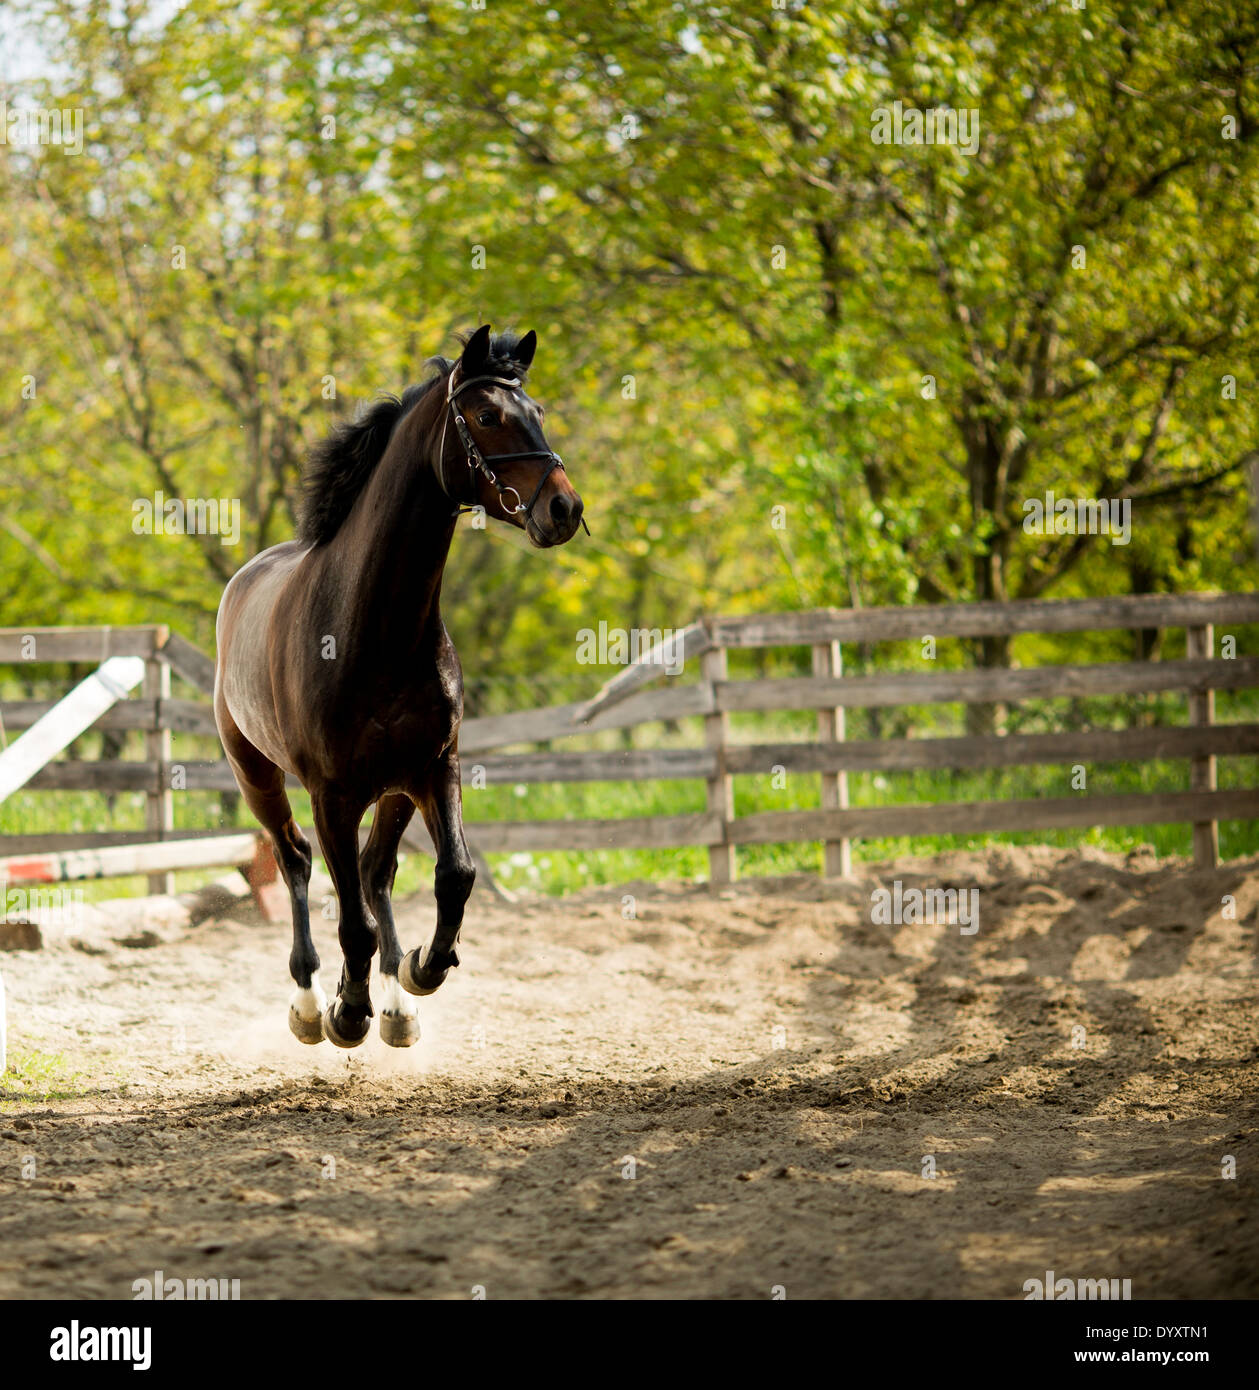 Running horse Stock Photo